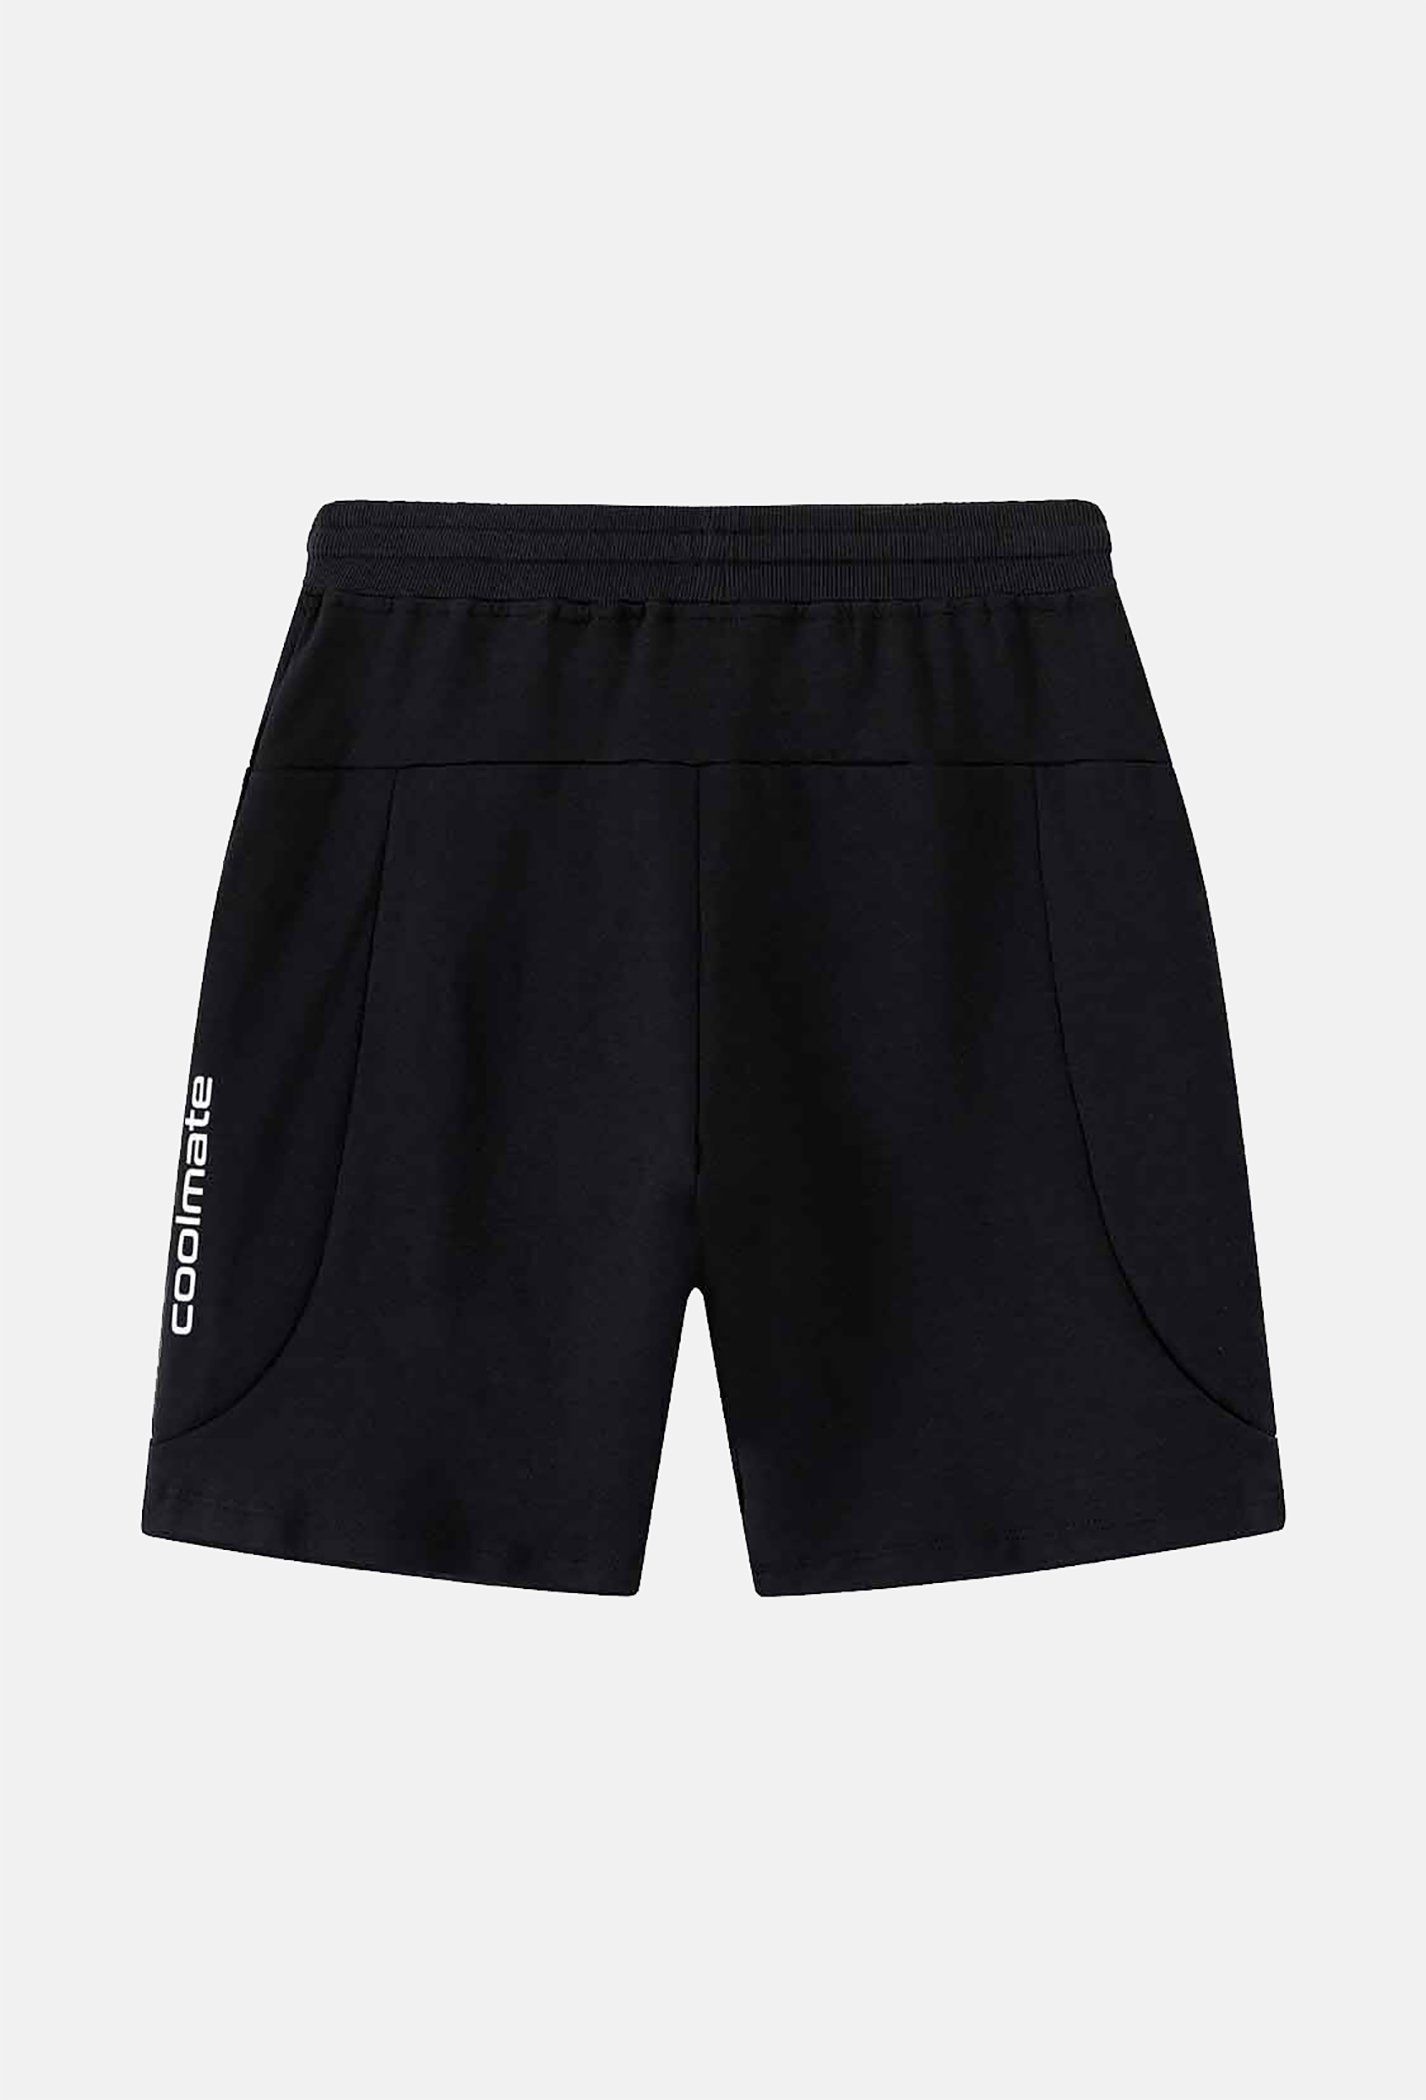 DEAL - Quần Shorts nam Easy Active (Form nhỏ tăng 1 size) gửi từ HN Đen 5